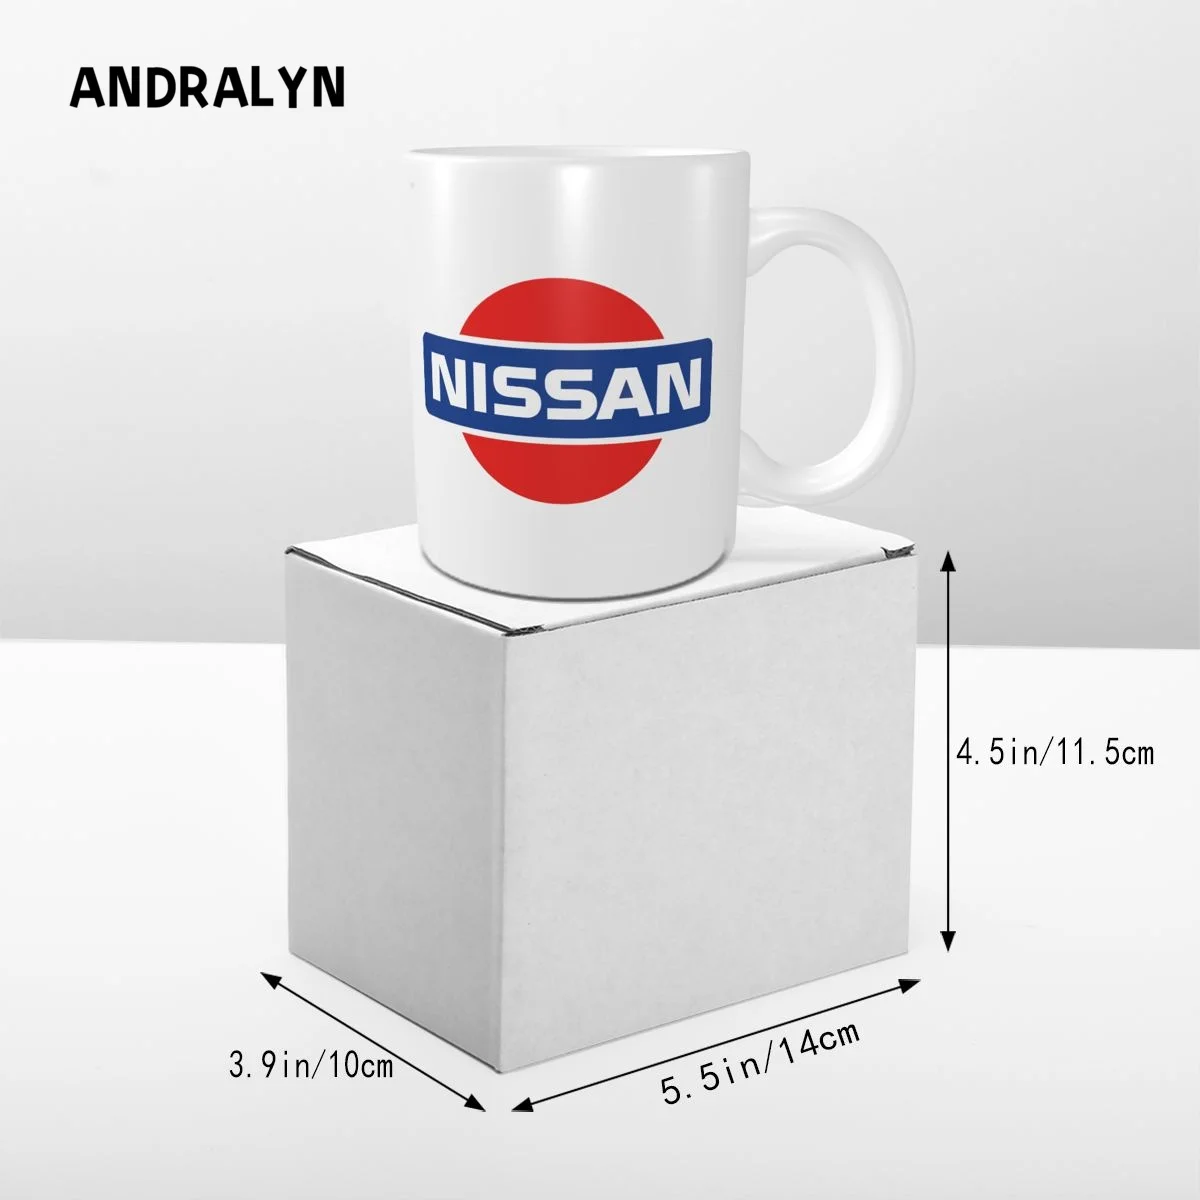 Кружка с винтажным логотипом Nissan Datsun Motor, 330 мл, керамические креативные кружки для чая с молоком, кофе, Забавный подарок друзьям на День рождения 4